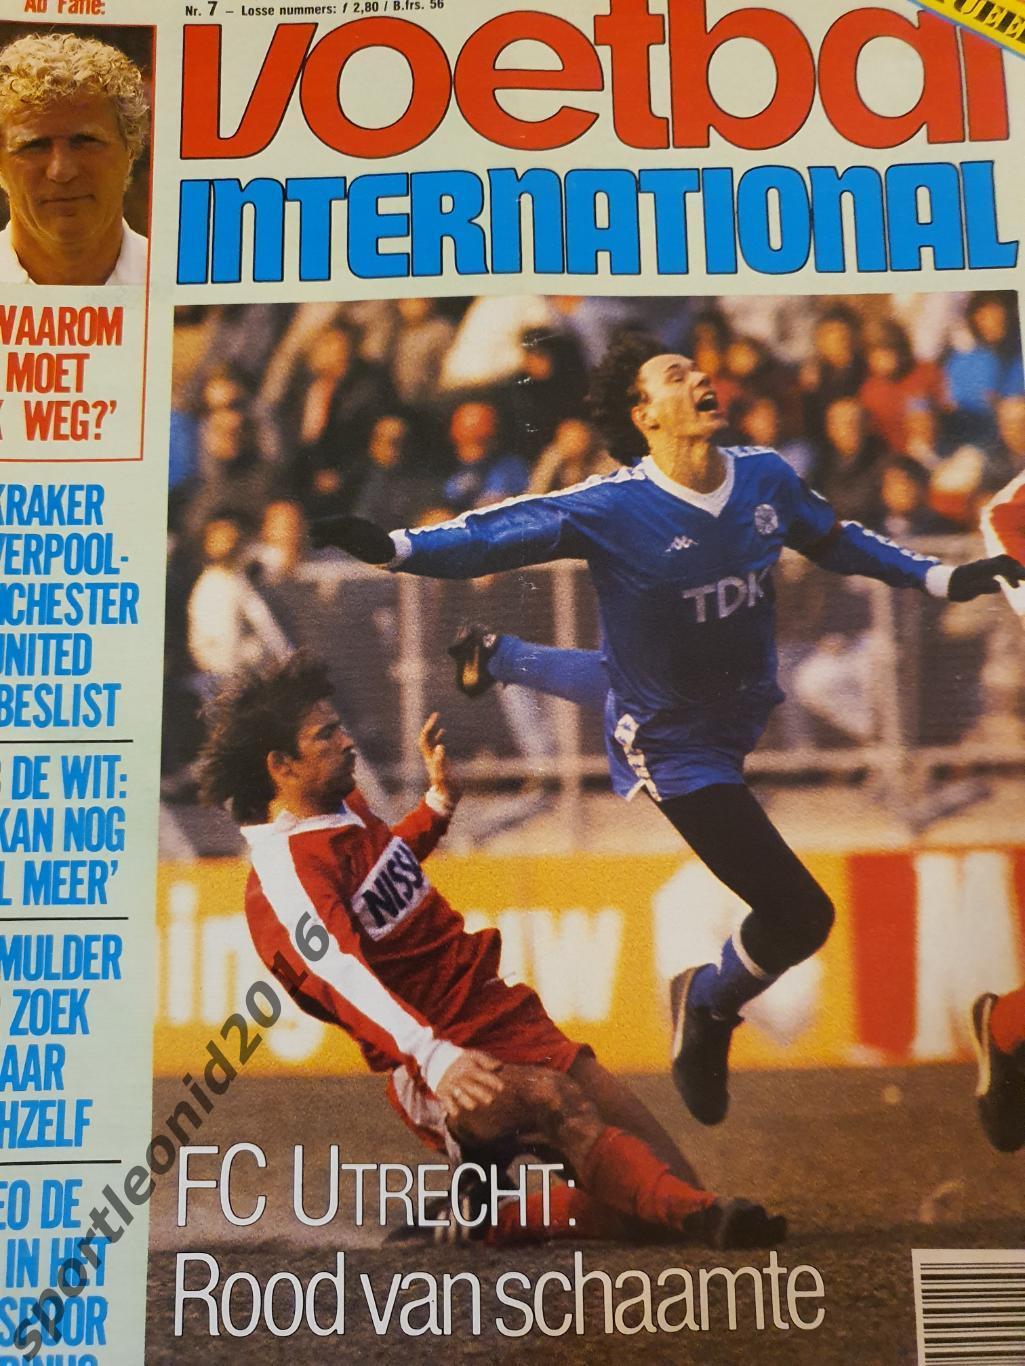 Voetbal International 1986.14 топ выпусков.В том числе итоговые к ЧМ-86.1 1